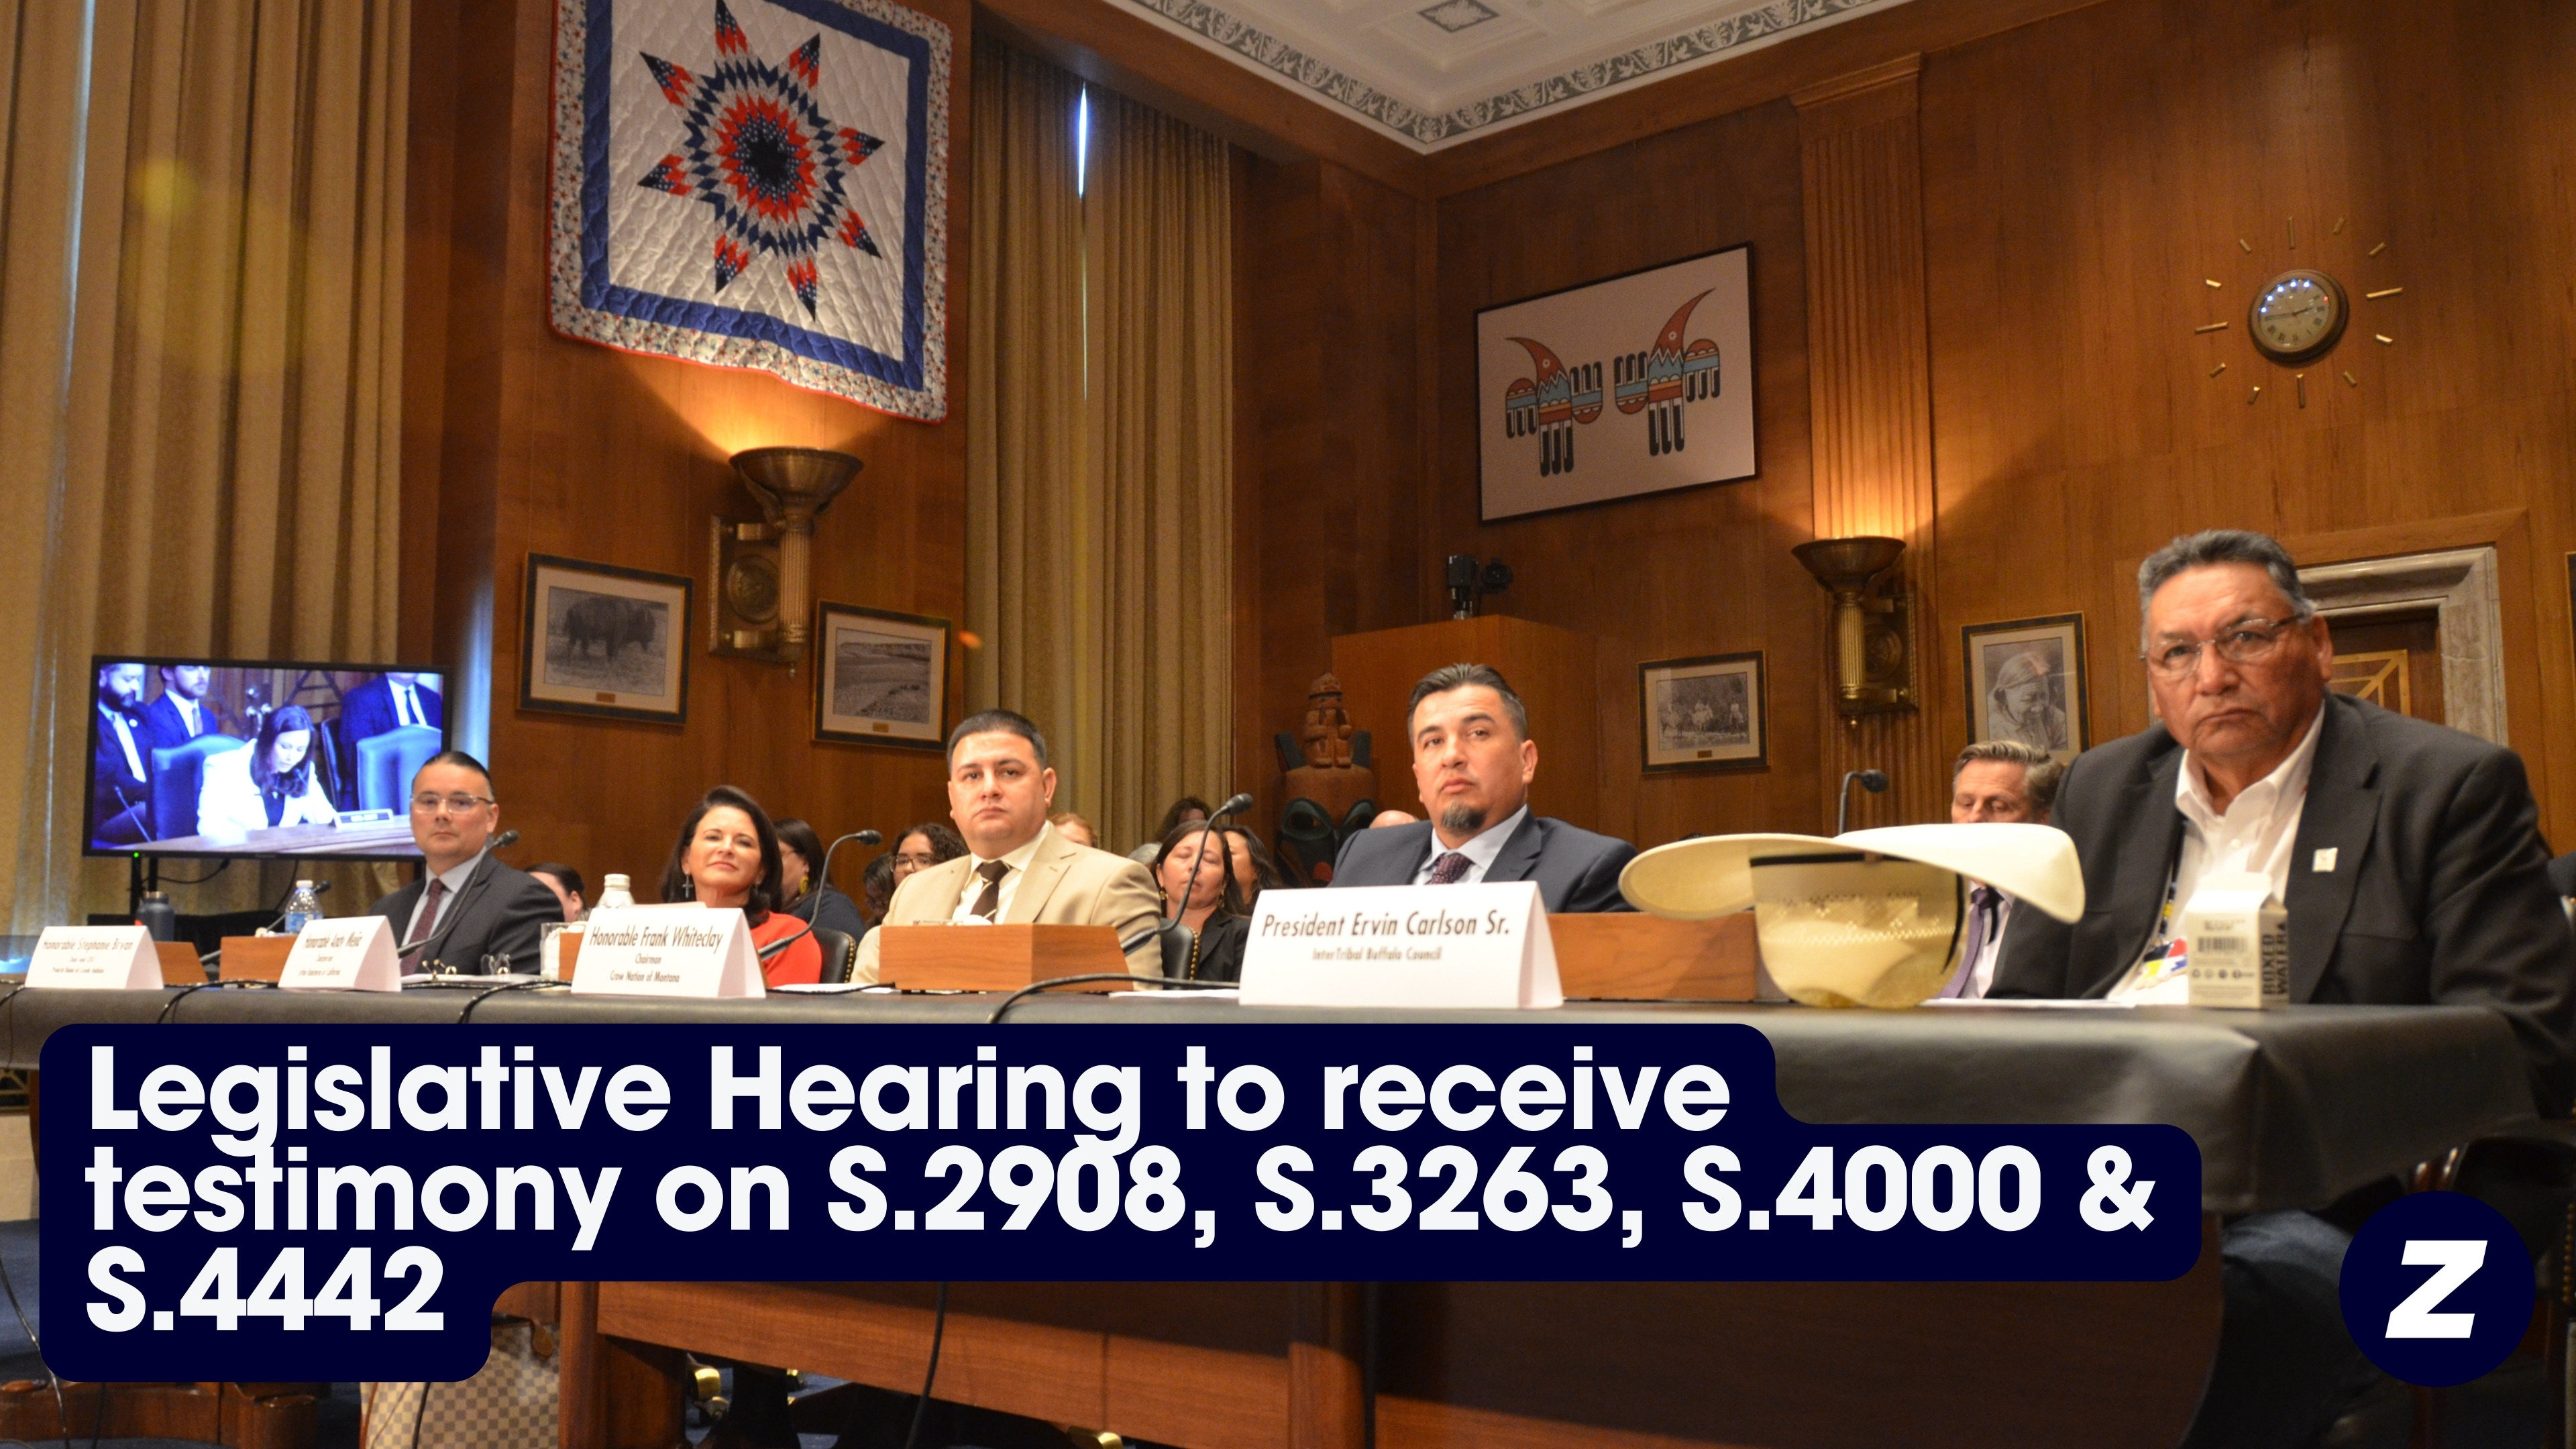 Legislative Hearing to receive testimony on S. 2908, S. 3263, S. 4000 & S. 4442